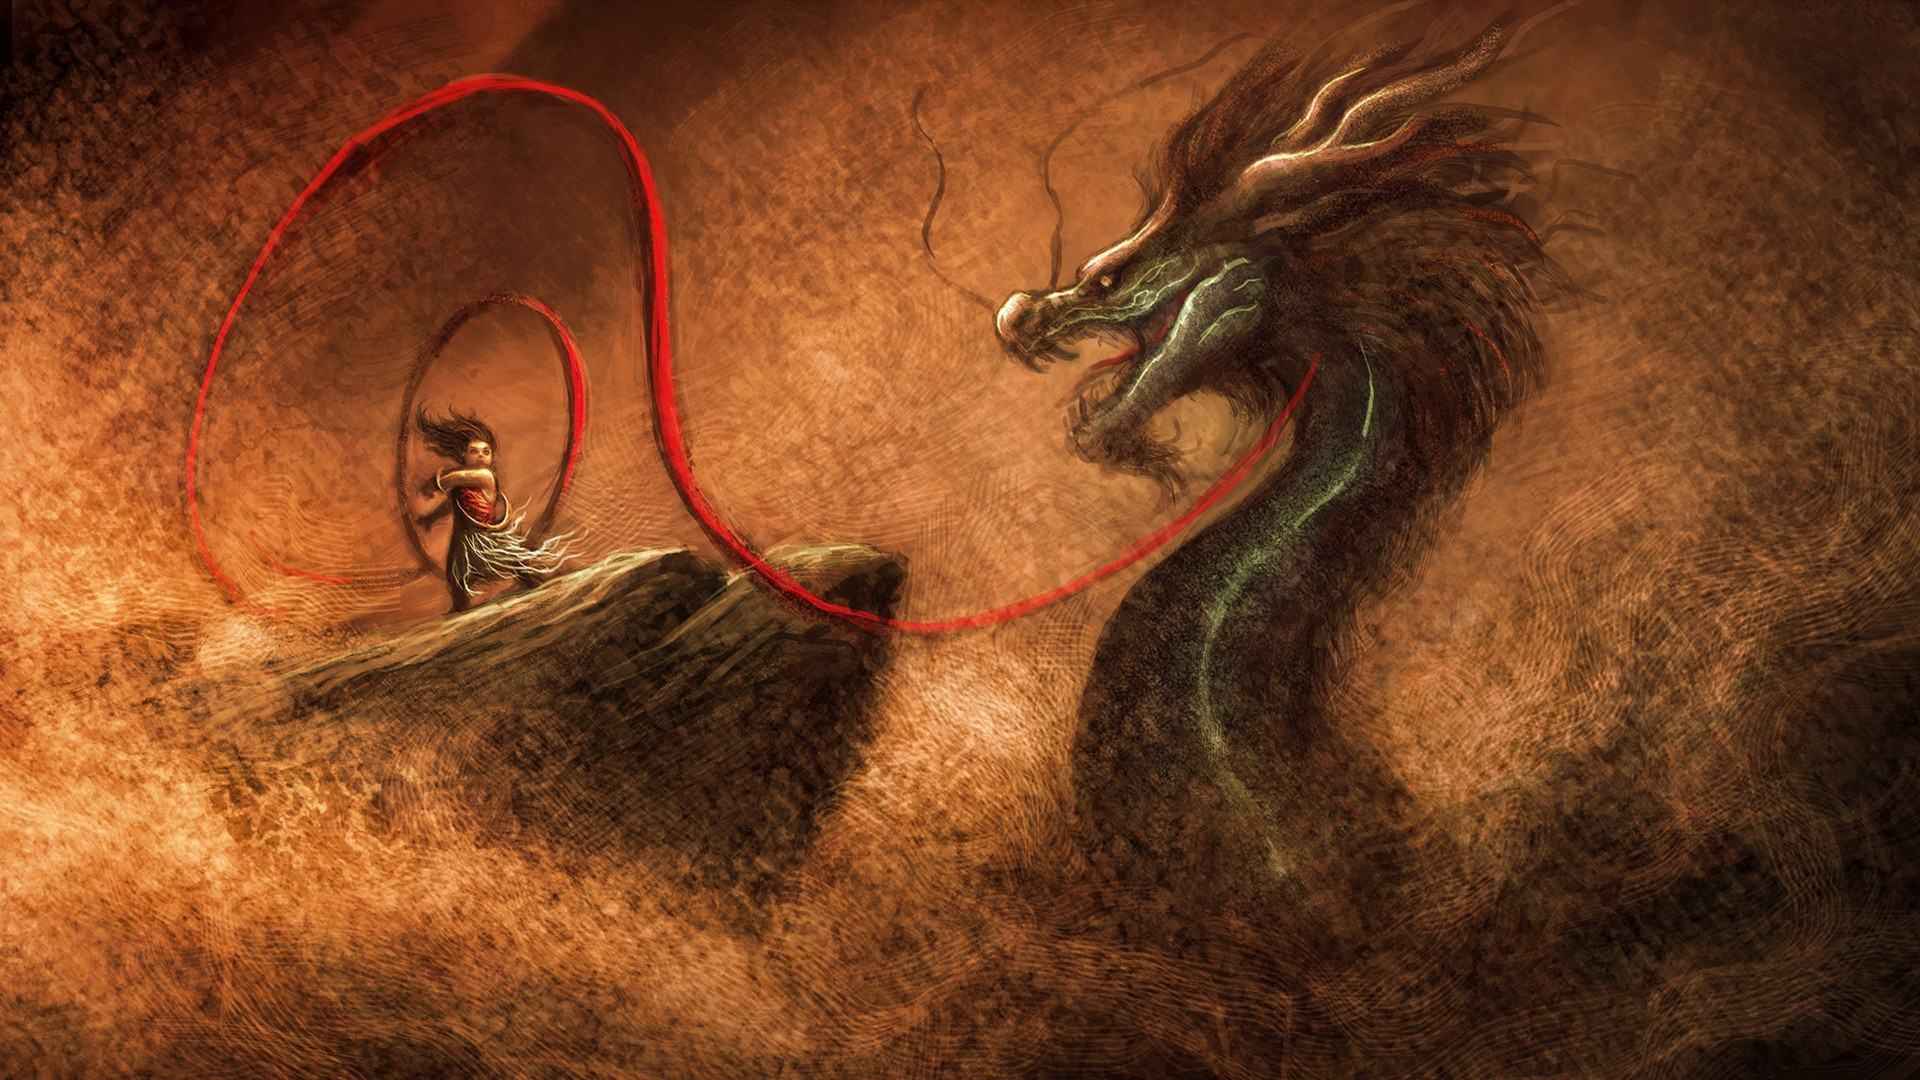 中国的远古神兽“龙”的高清壁纸图片套图1